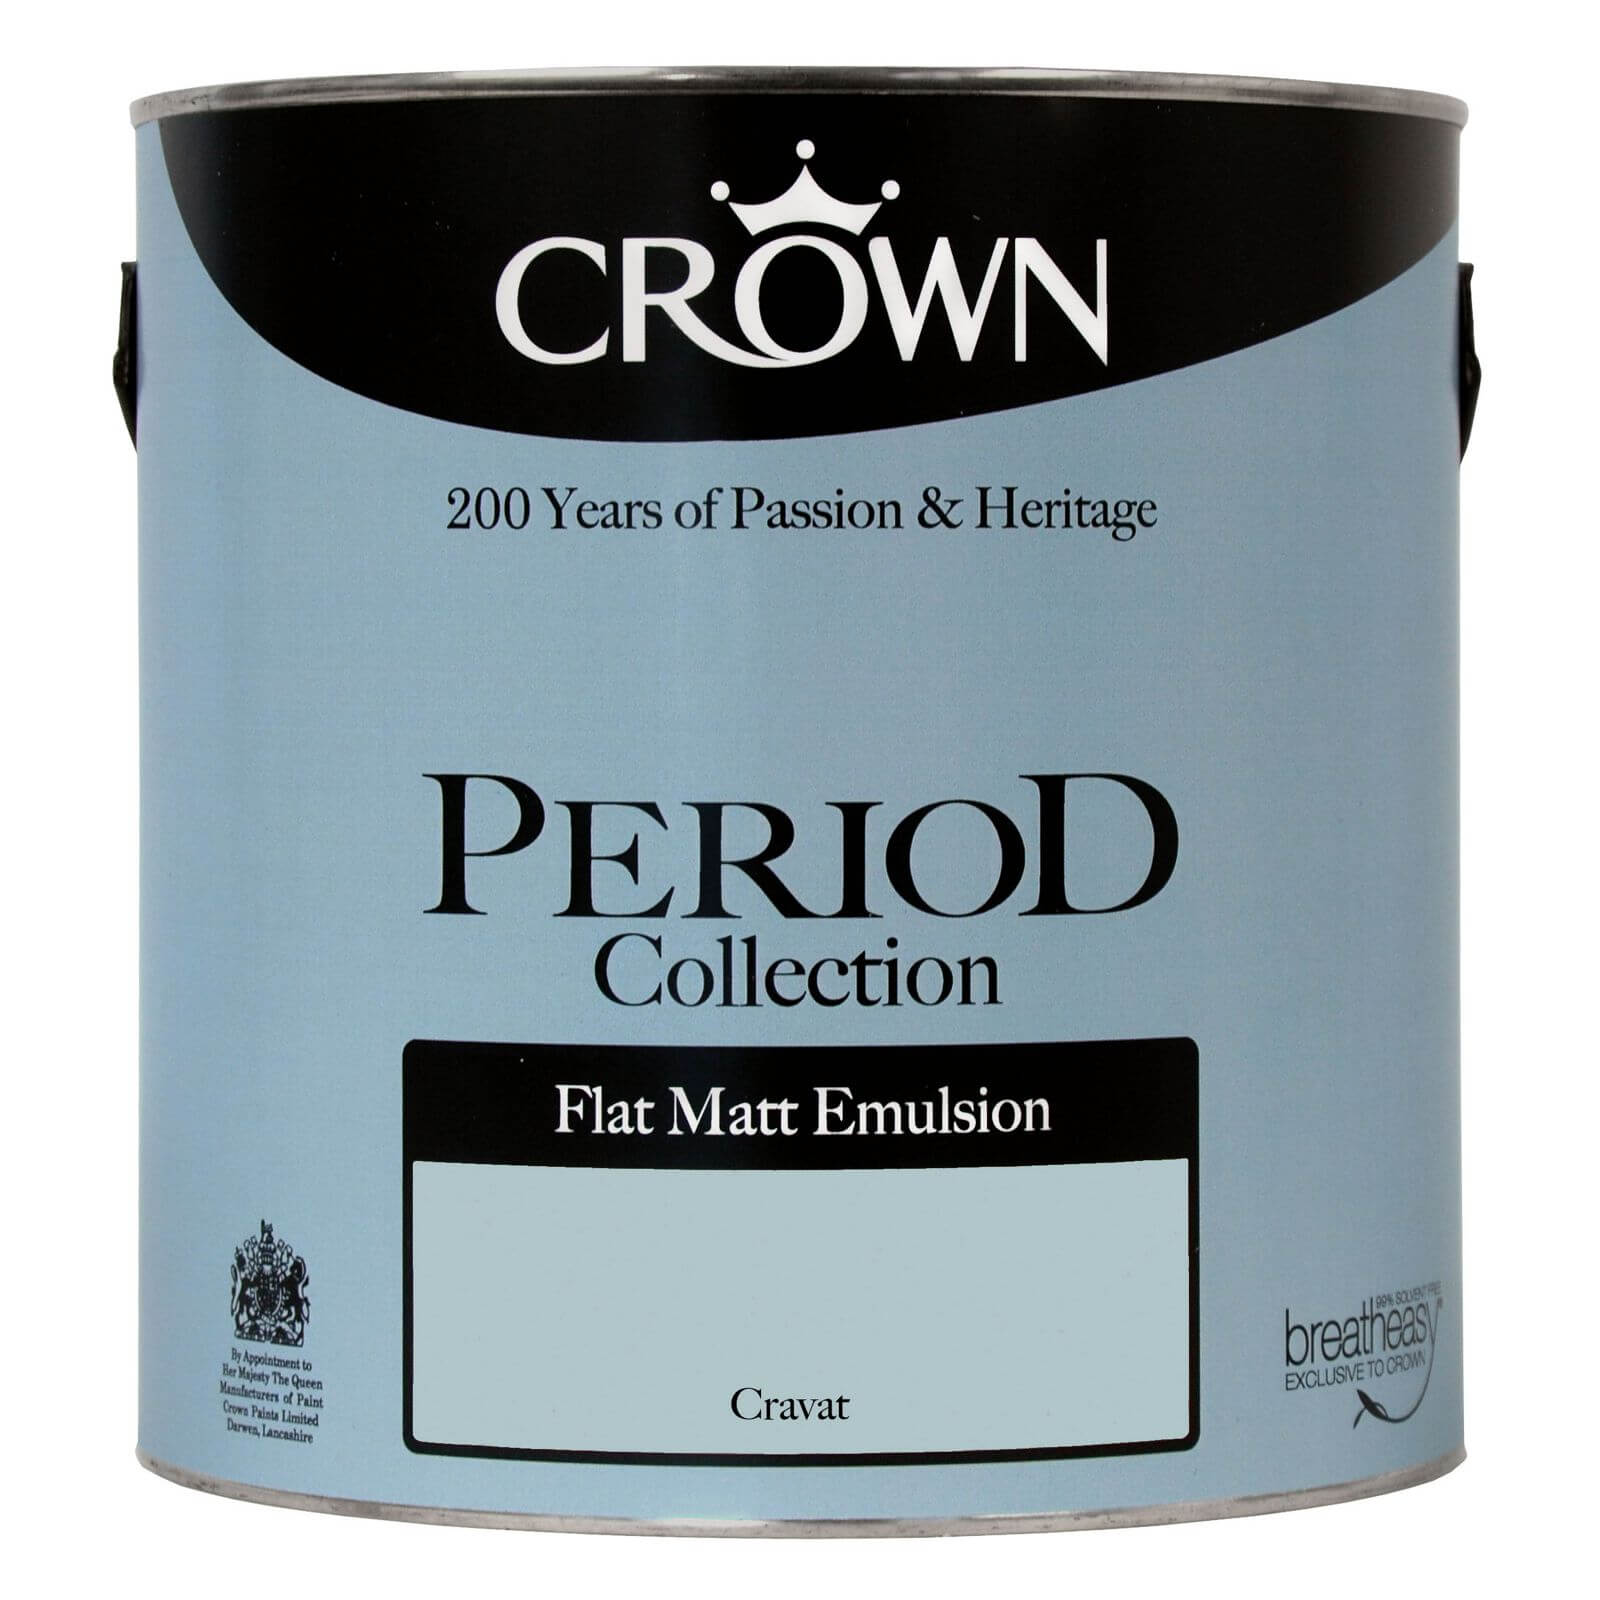 Crown Period Collection Cravat - Flat Matt Emulsion Paint - 2.5L